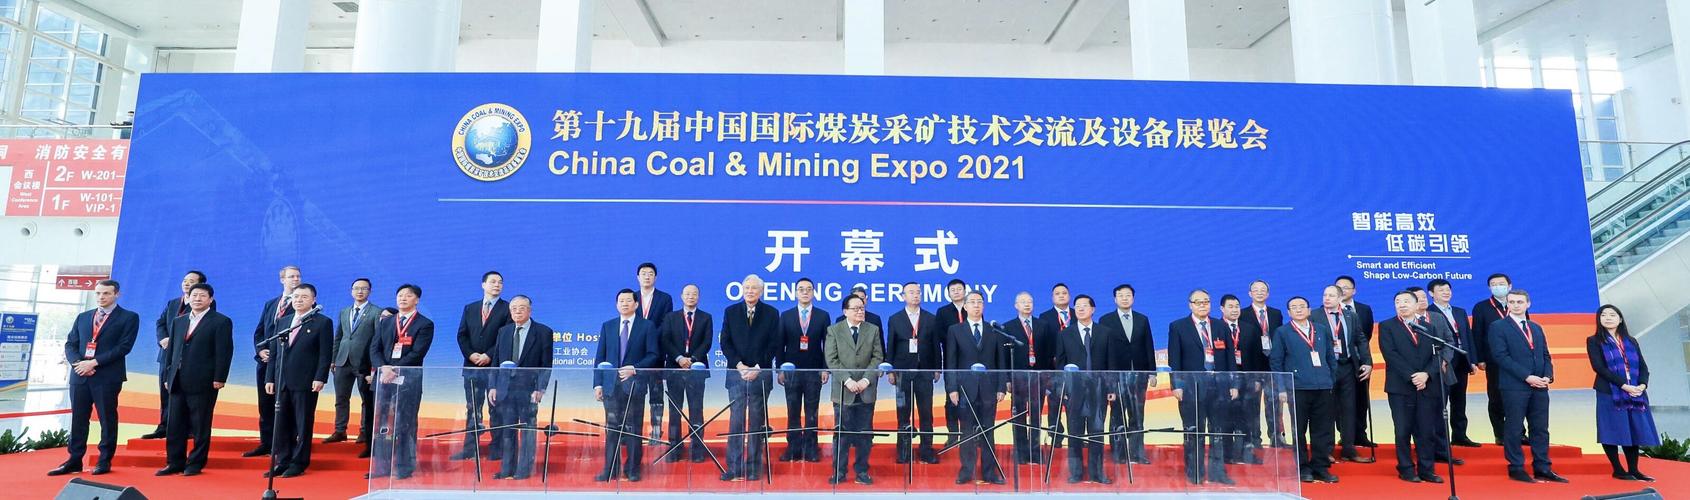 第十九届中国国际煤炭采矿技术交流及设备展览会开幕